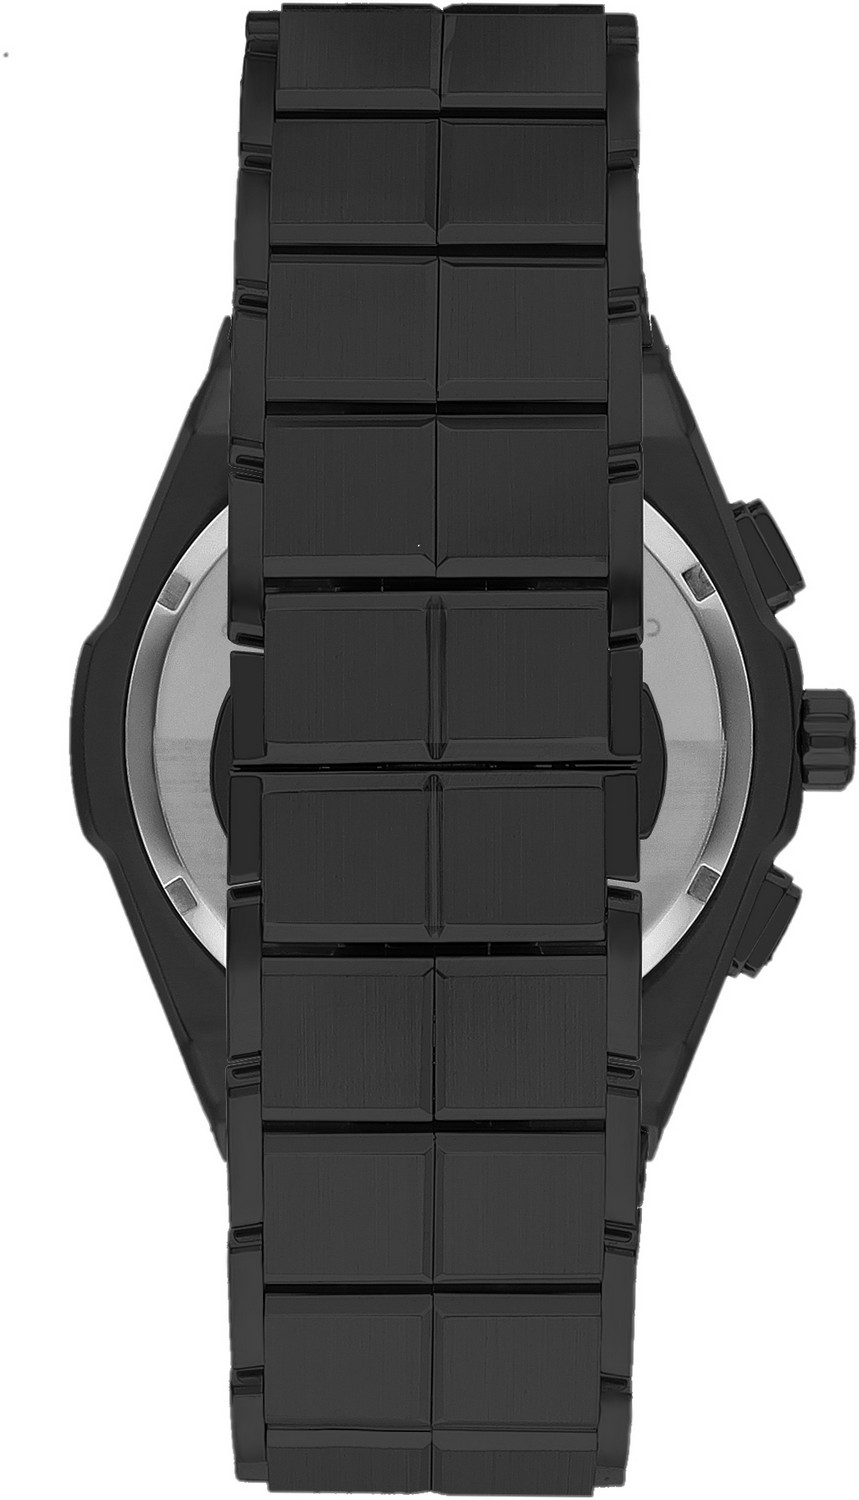 BEVERLY HILLS POLO CLUB  Мужские часы, кварцевый механизм, сталь с покрытием, 46 мм